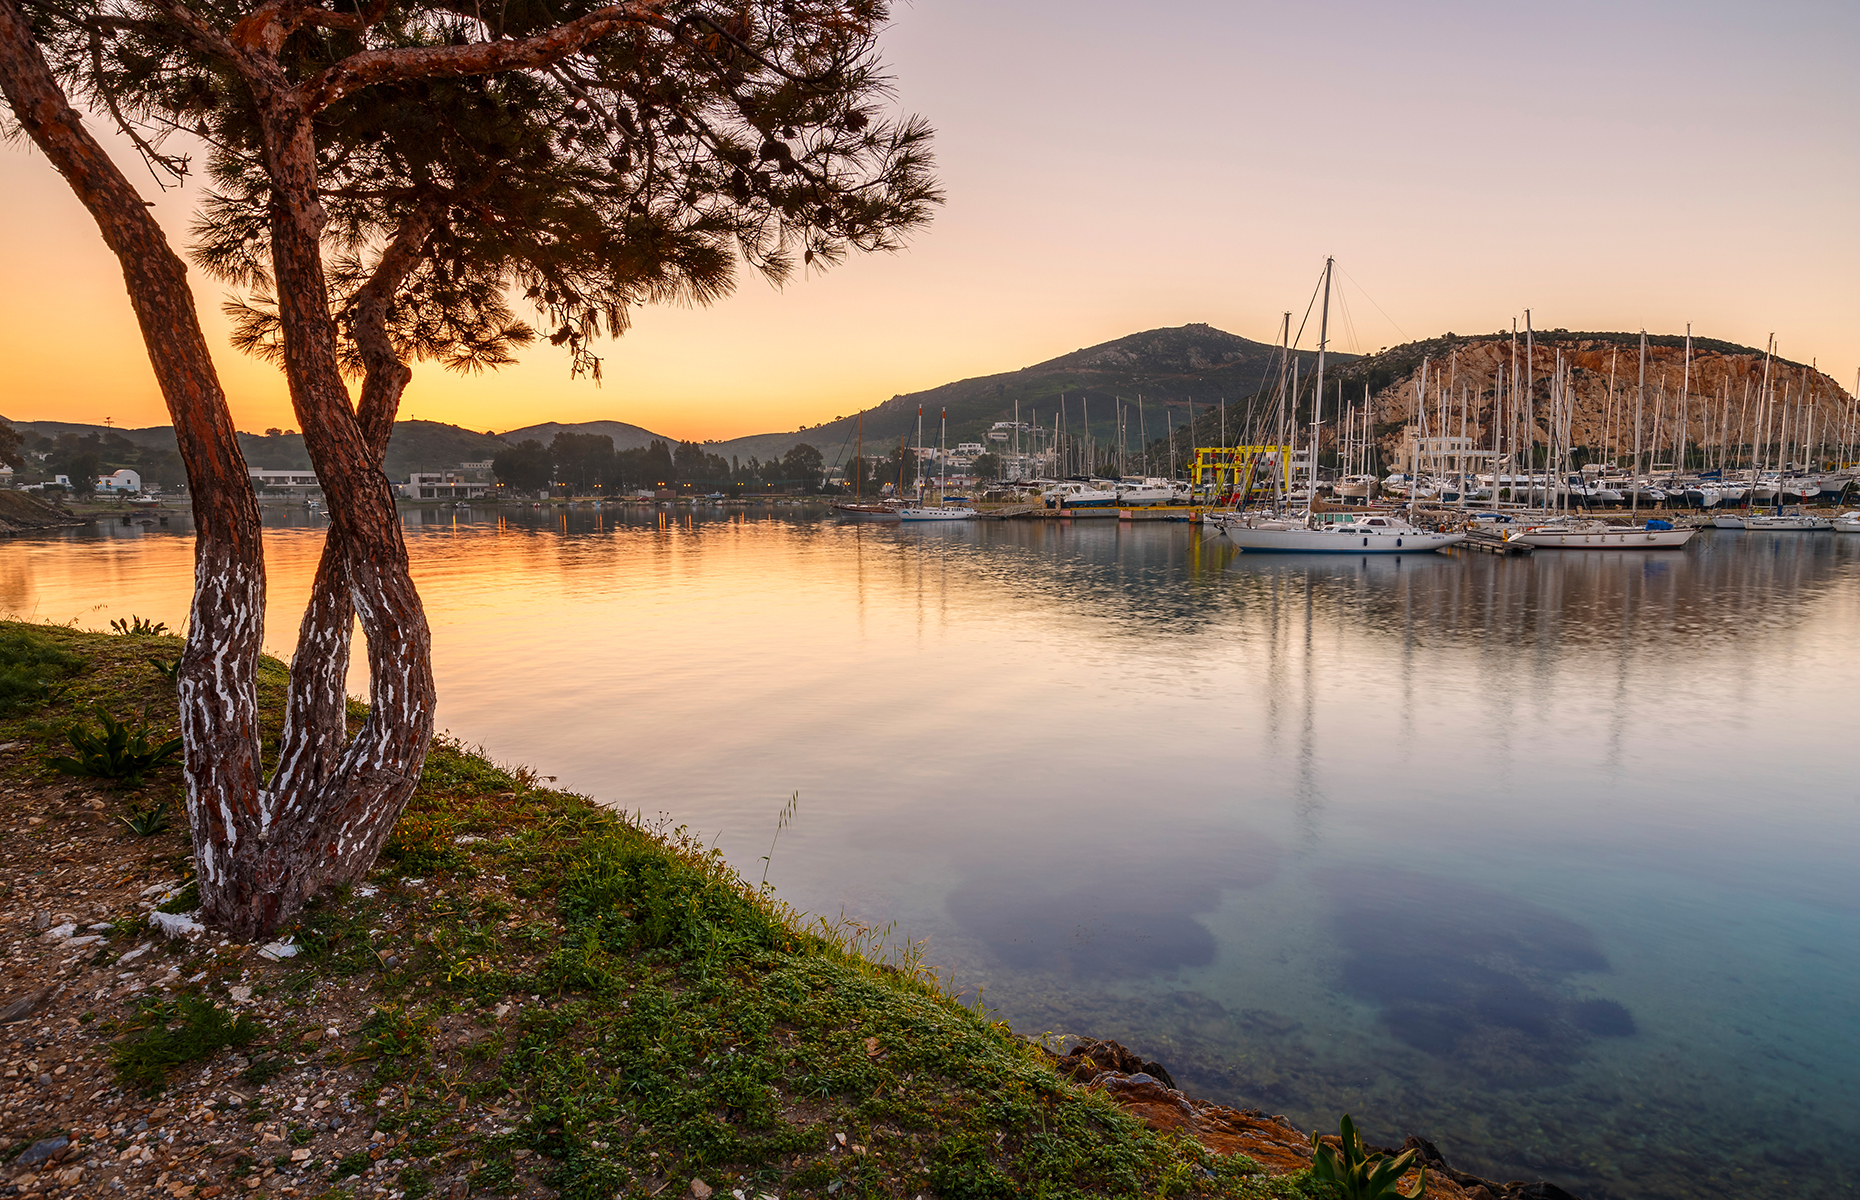 Leros, Greece. (Image: Milan Gonda/Shutterstock)